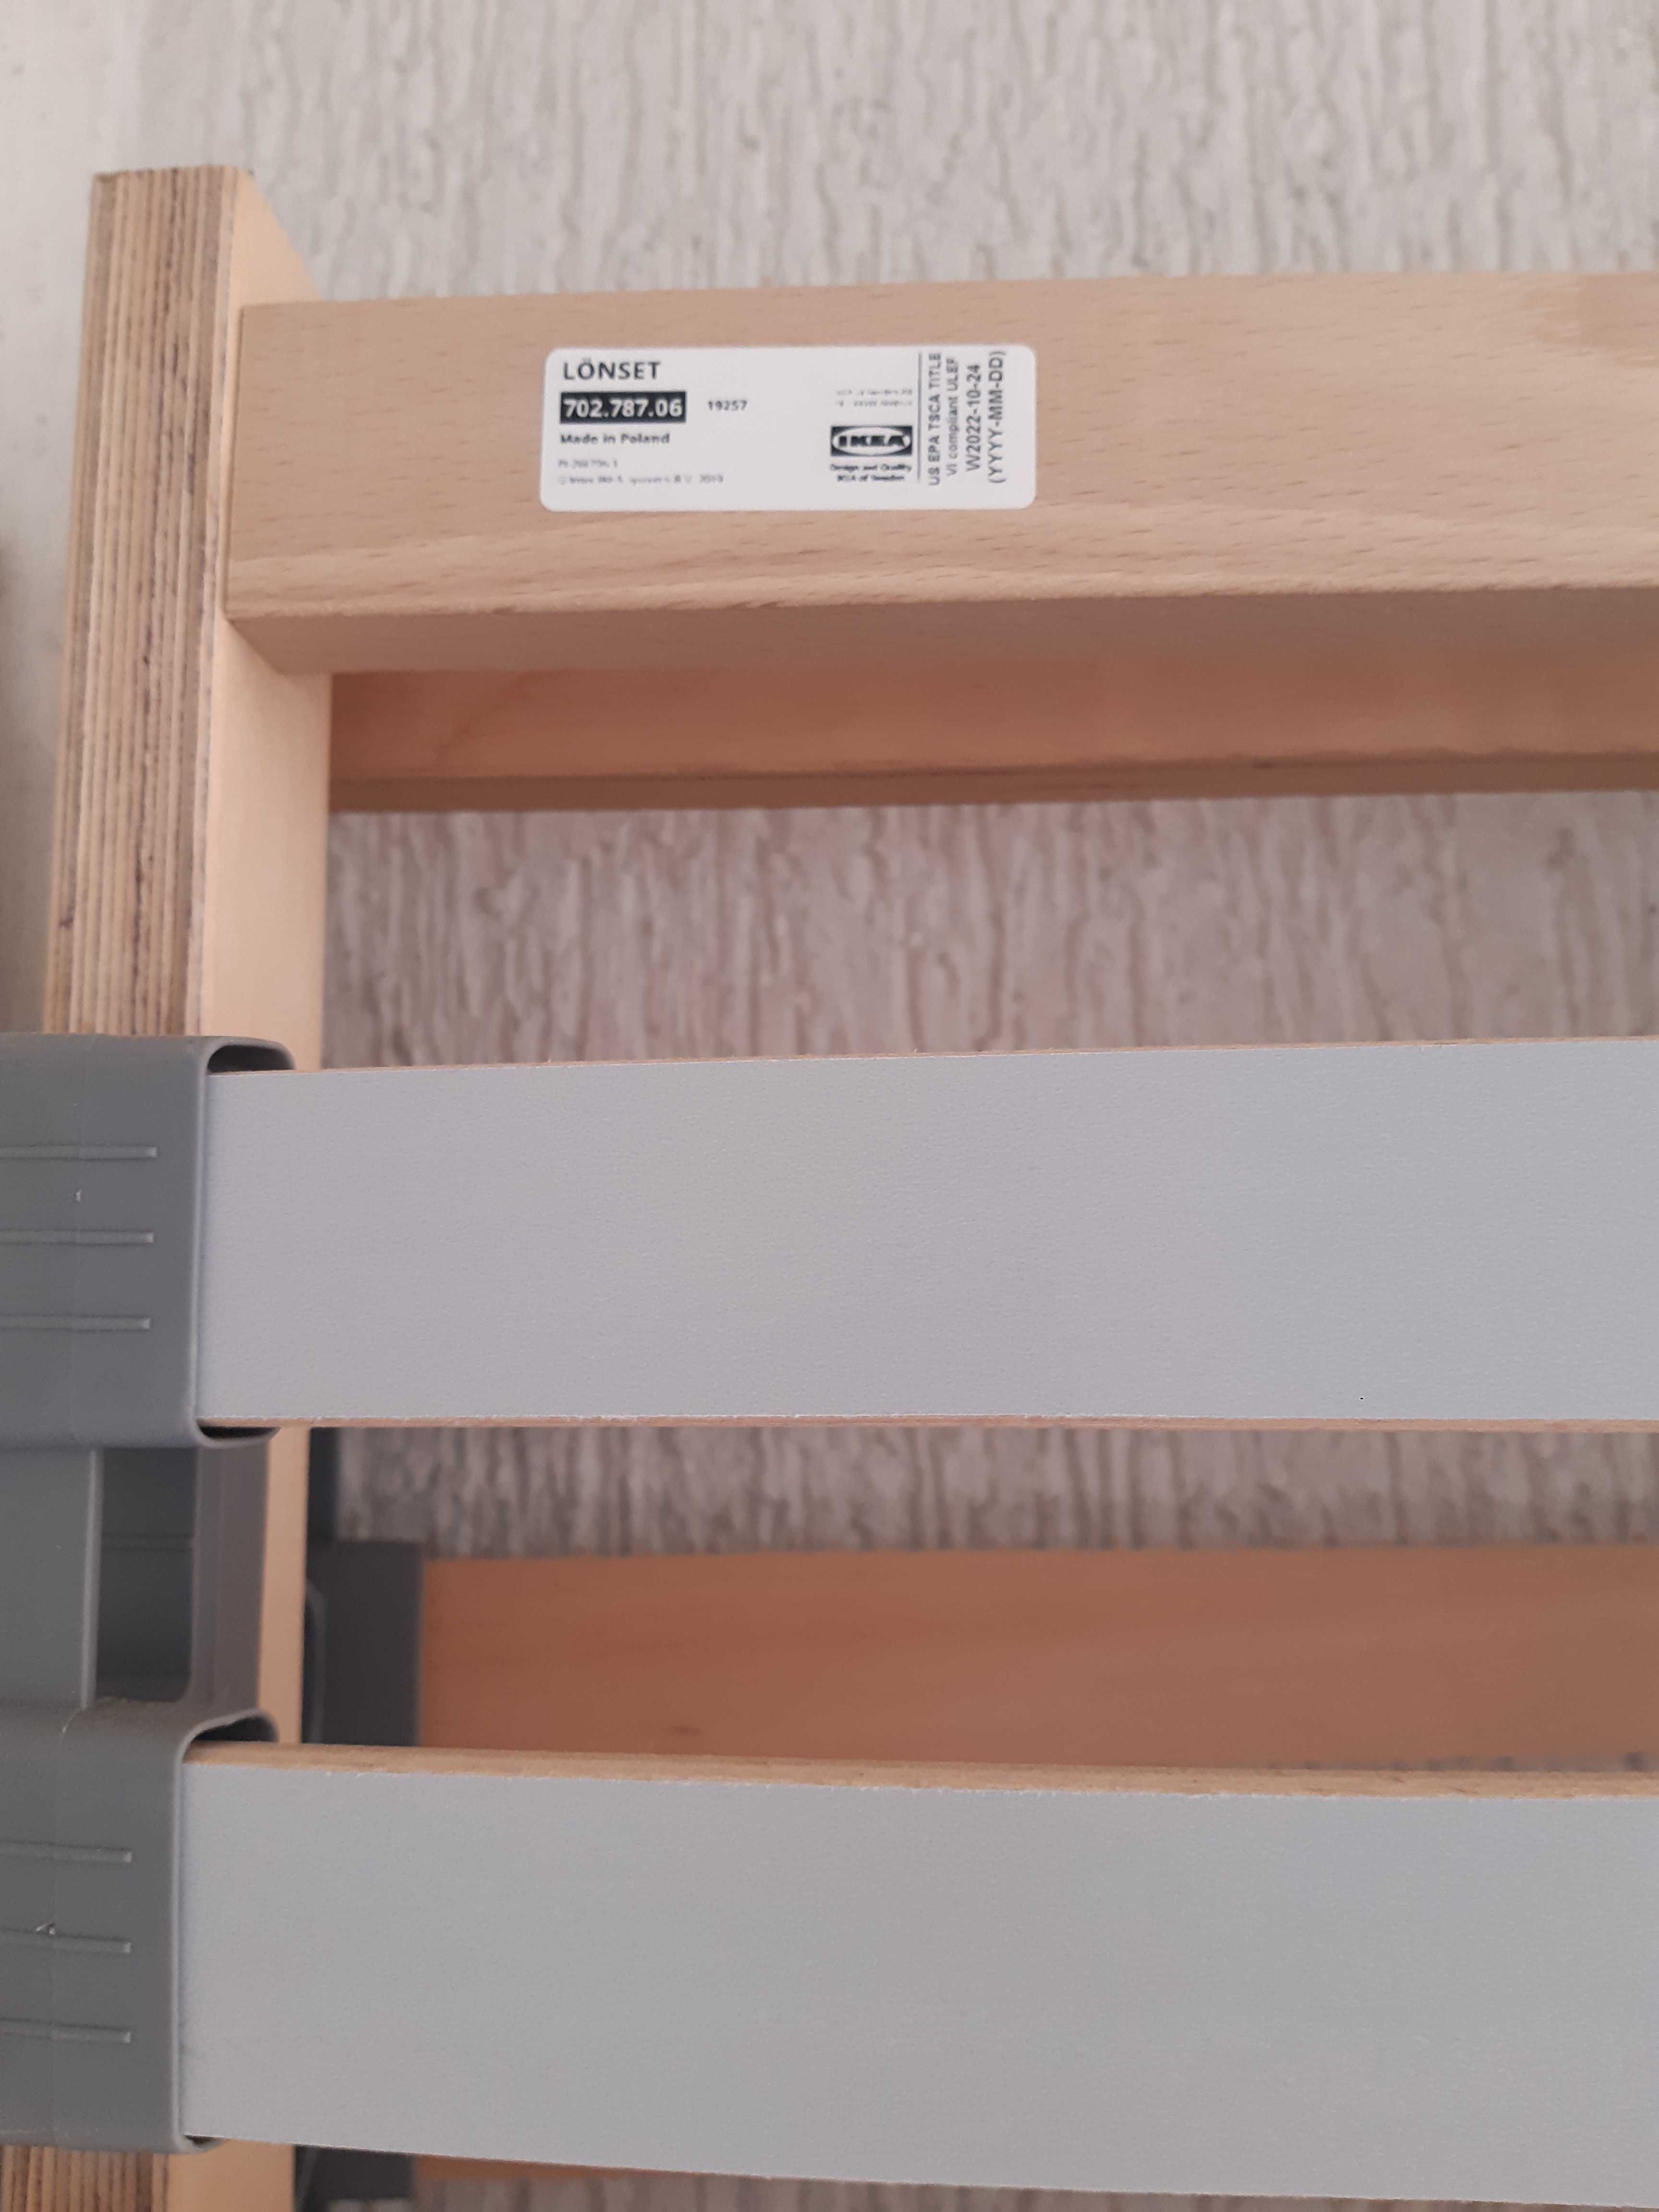 2 броя НОВИ подматрачни рамки LONSET от IKEA, размер 70×200см